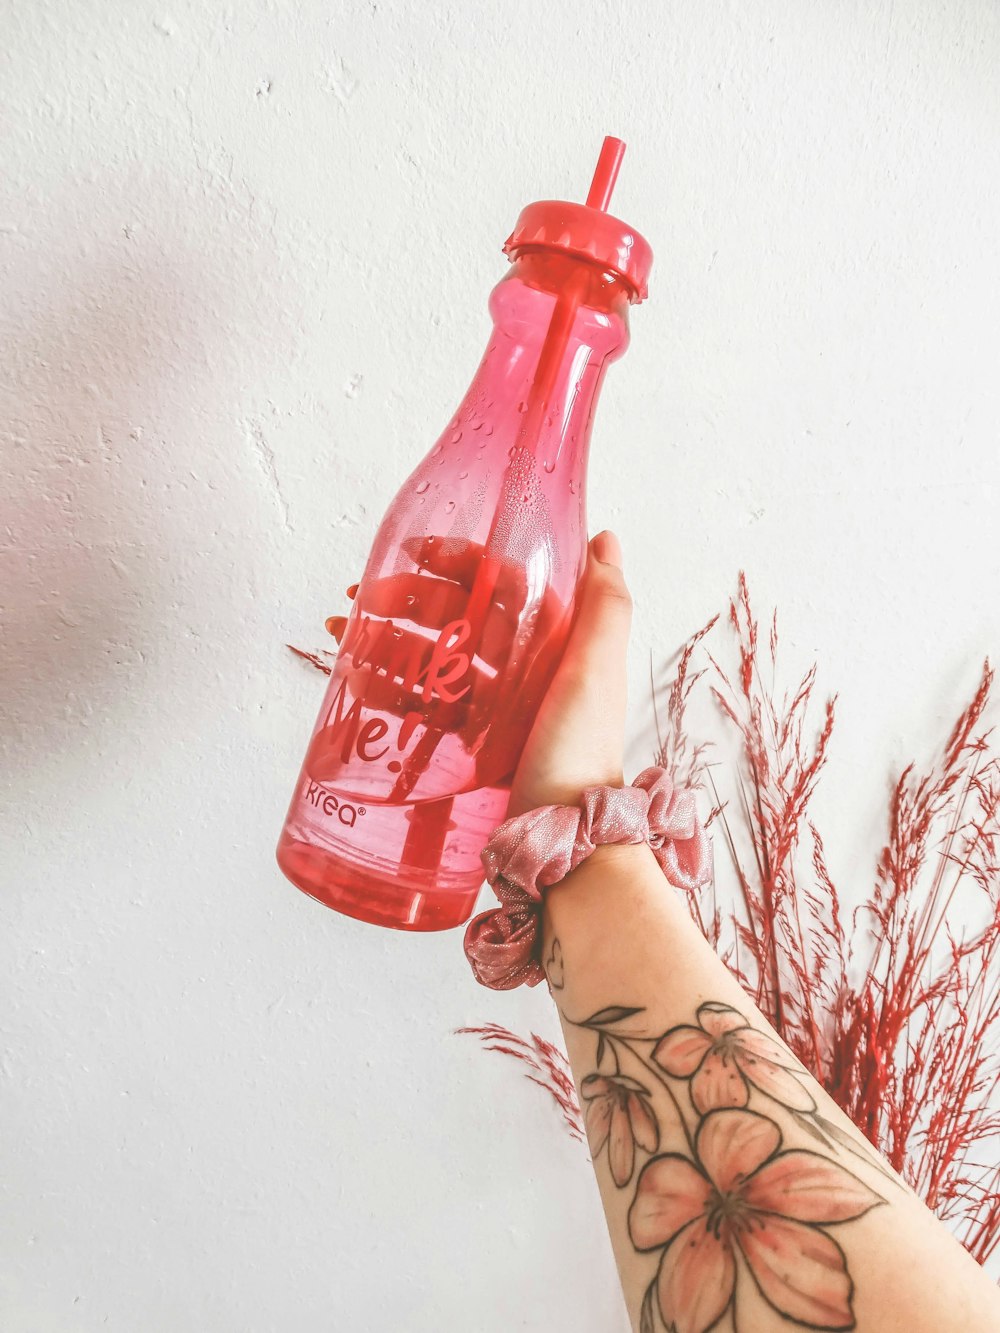 Persona sosteniendo una botella de plástico roja